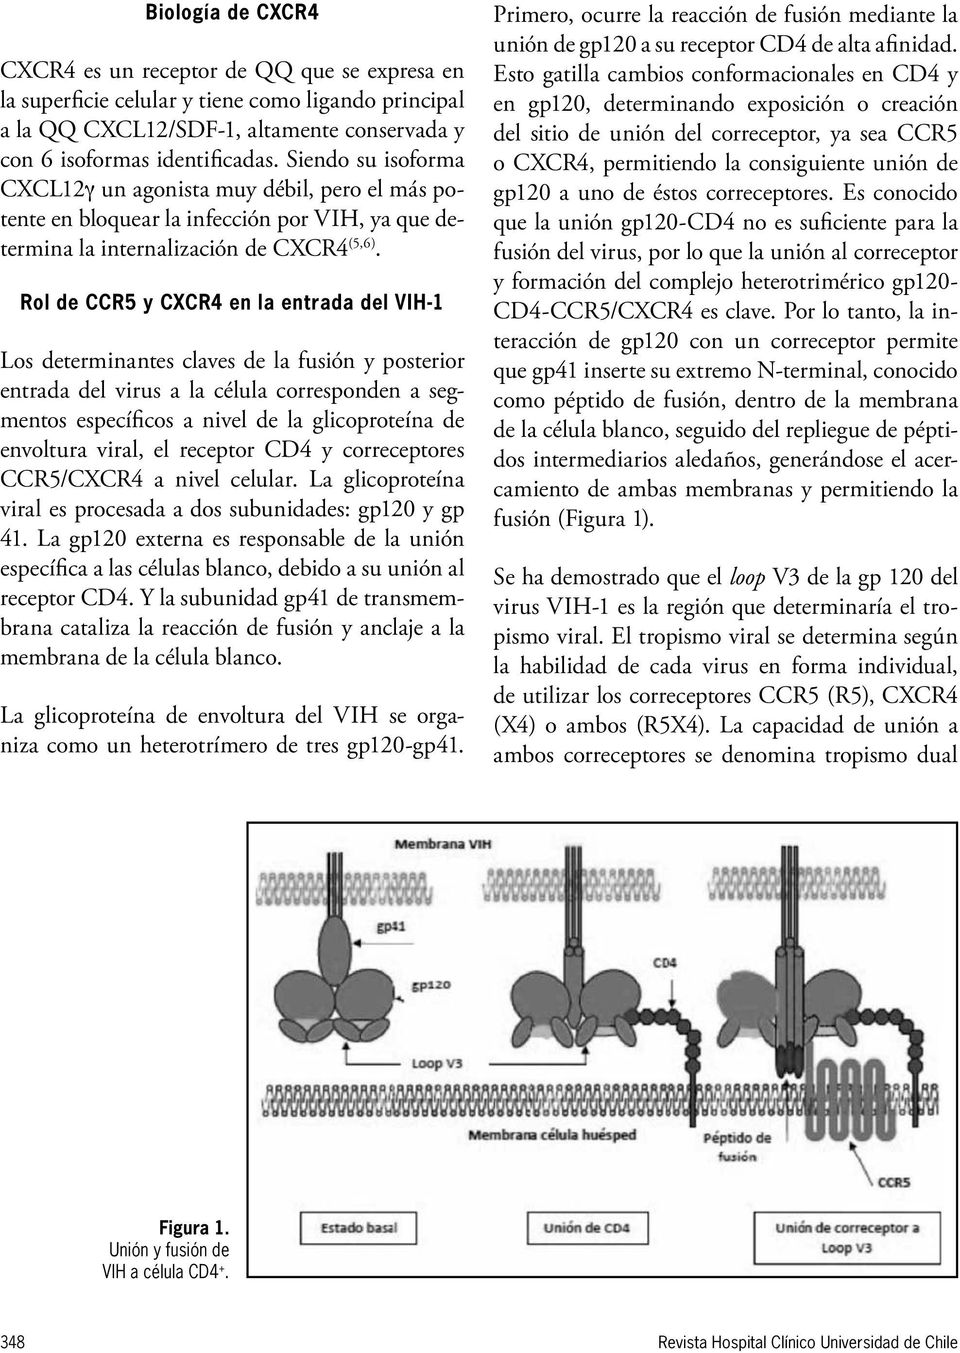 Rol de CCR5 y CXCR4 en la entrada del VIH-1 Los determinantes claves de la fusión y posterior entrada del virus a la célula corresponden a segmentos específicos a nivel de la glicoproteína de